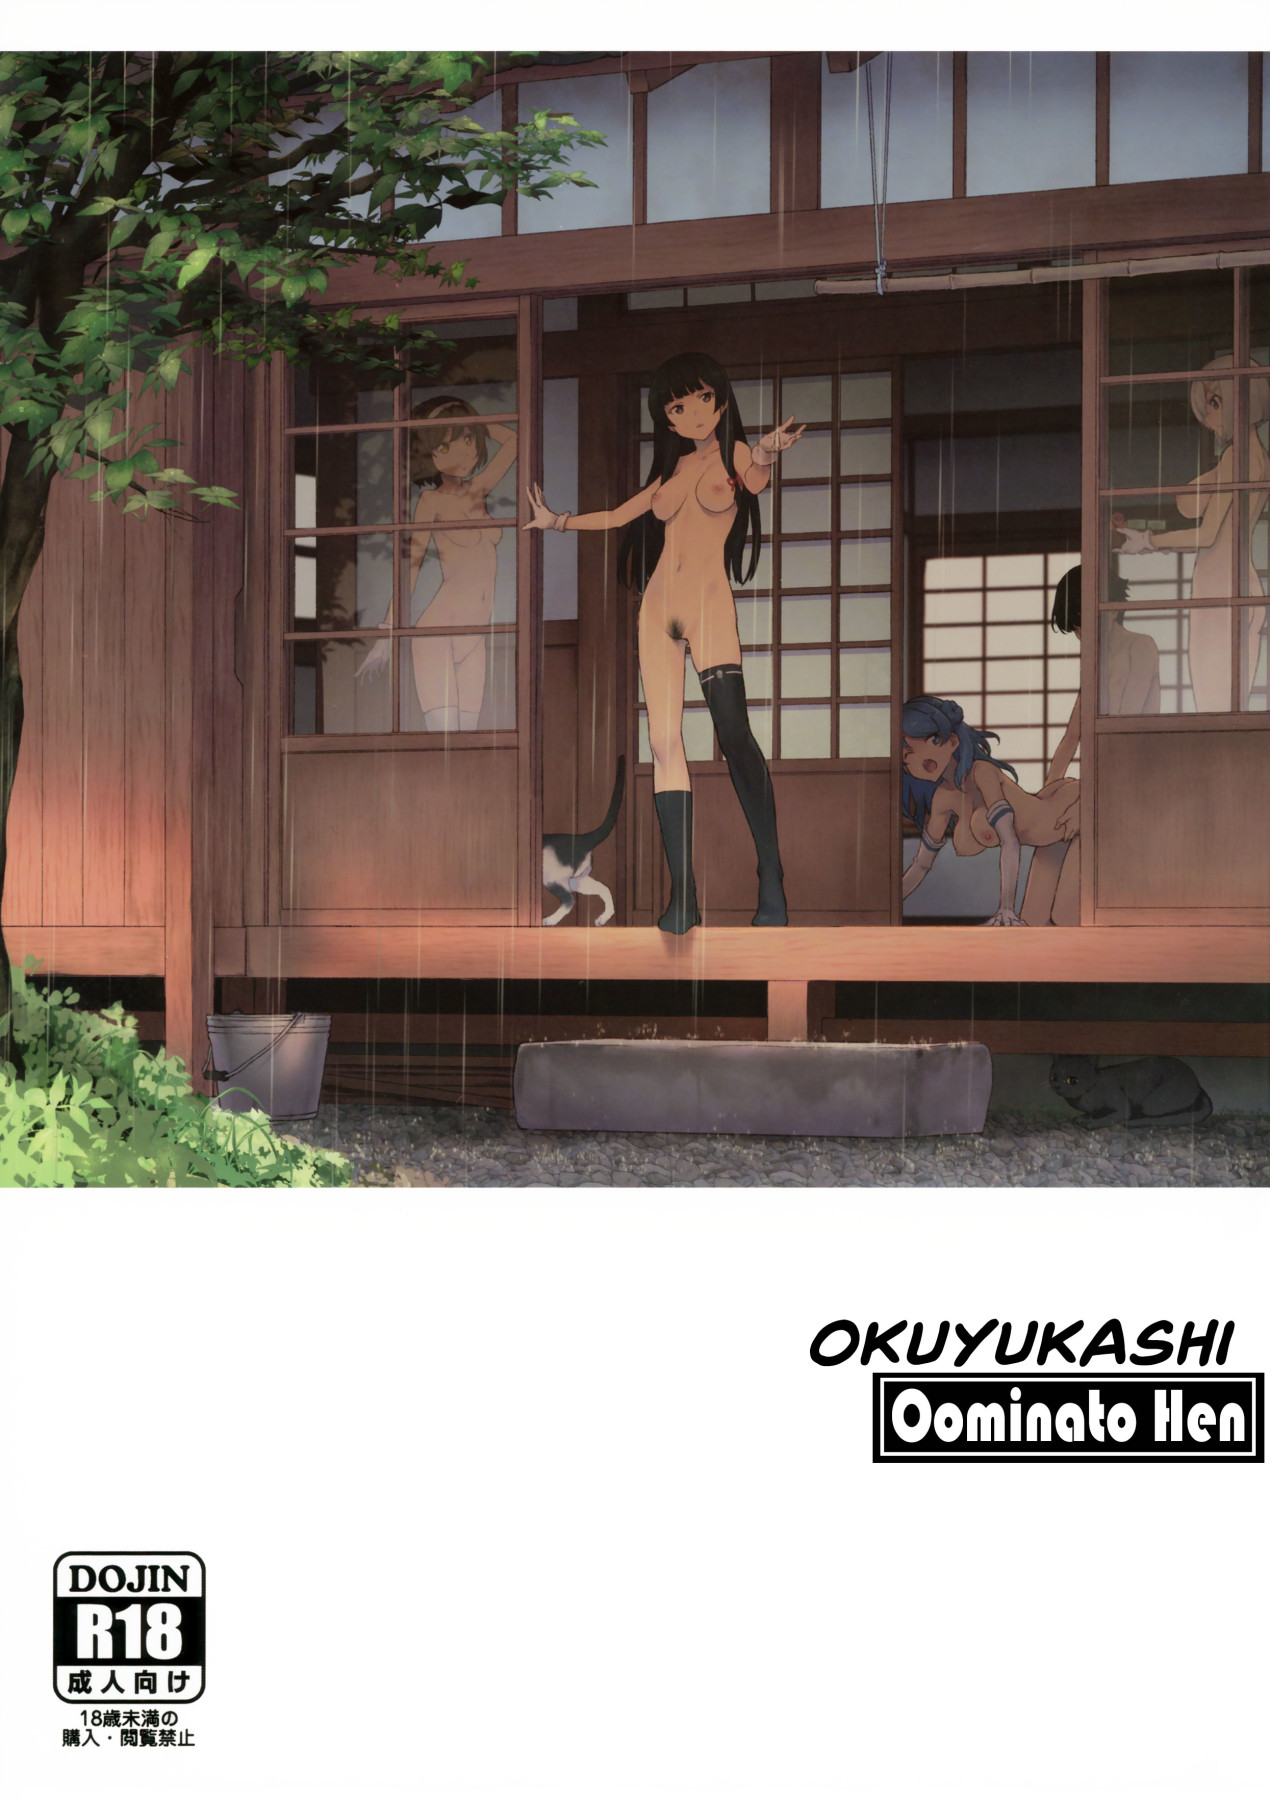 Hentai Manga Comic-Okuyukashi Oominato Hen-Read-1